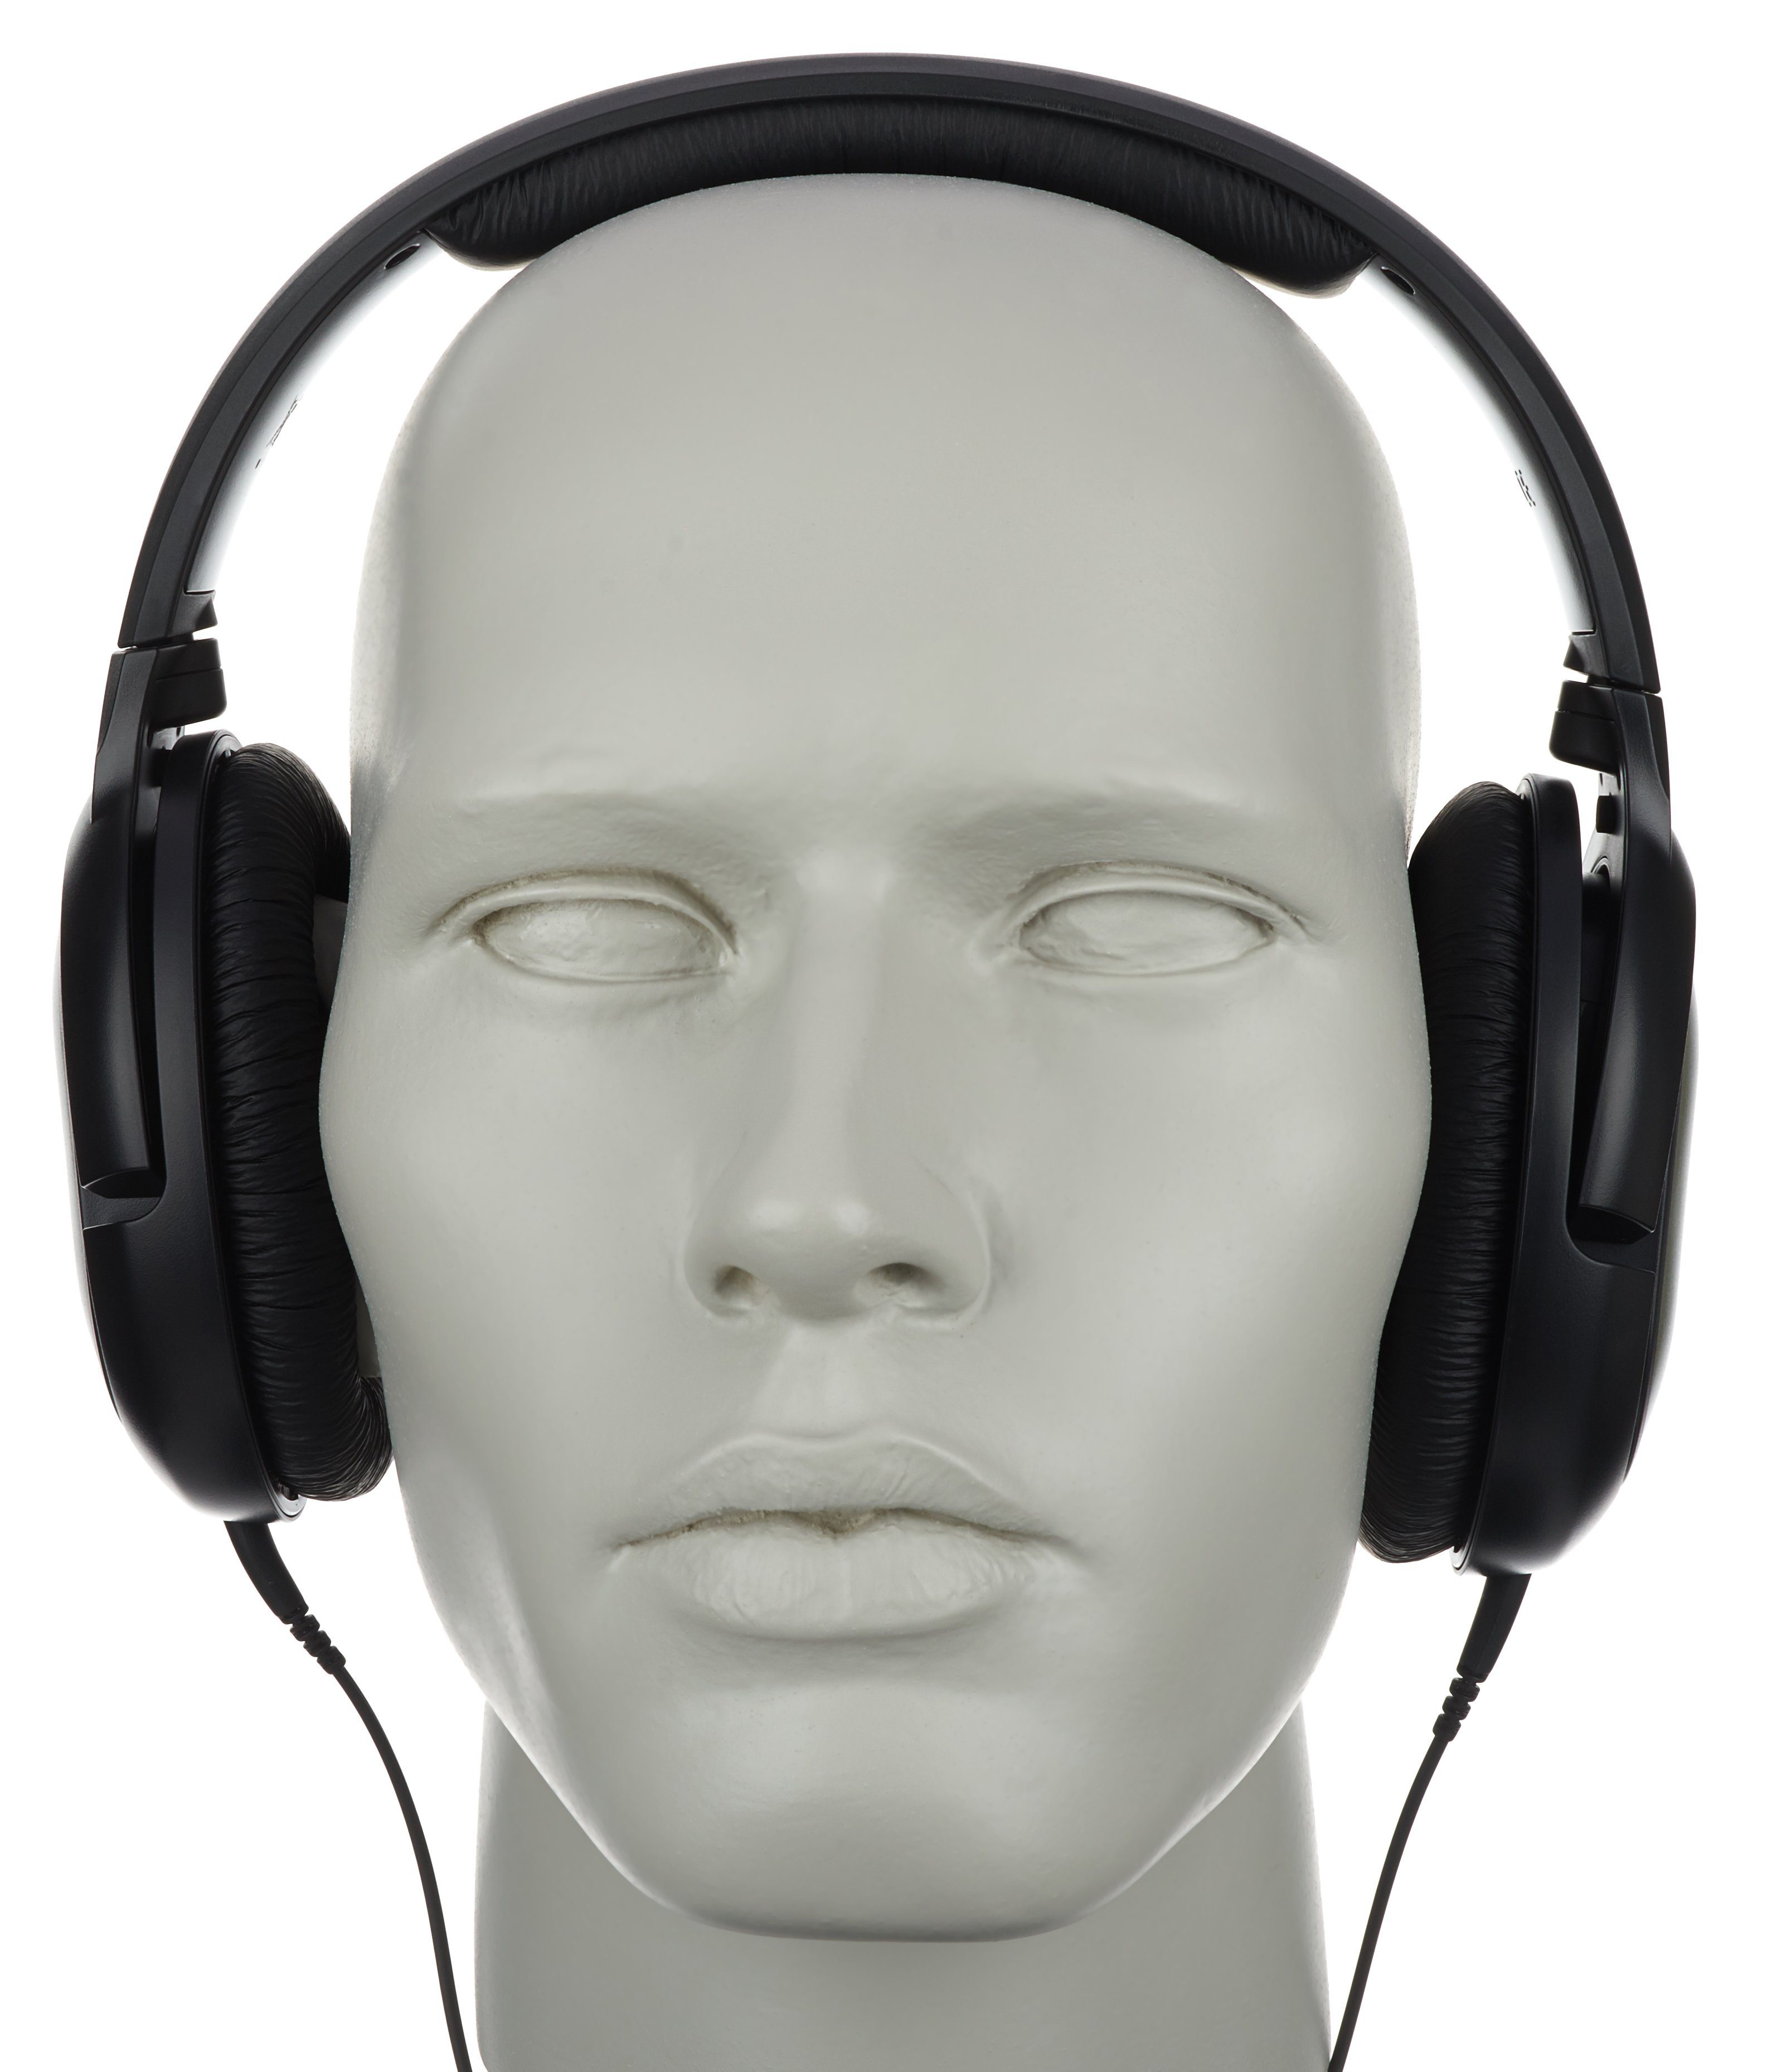 Sennheiser HD-201 Lightweight Over Ear Headphones (Discontinued by  Manufacturer)